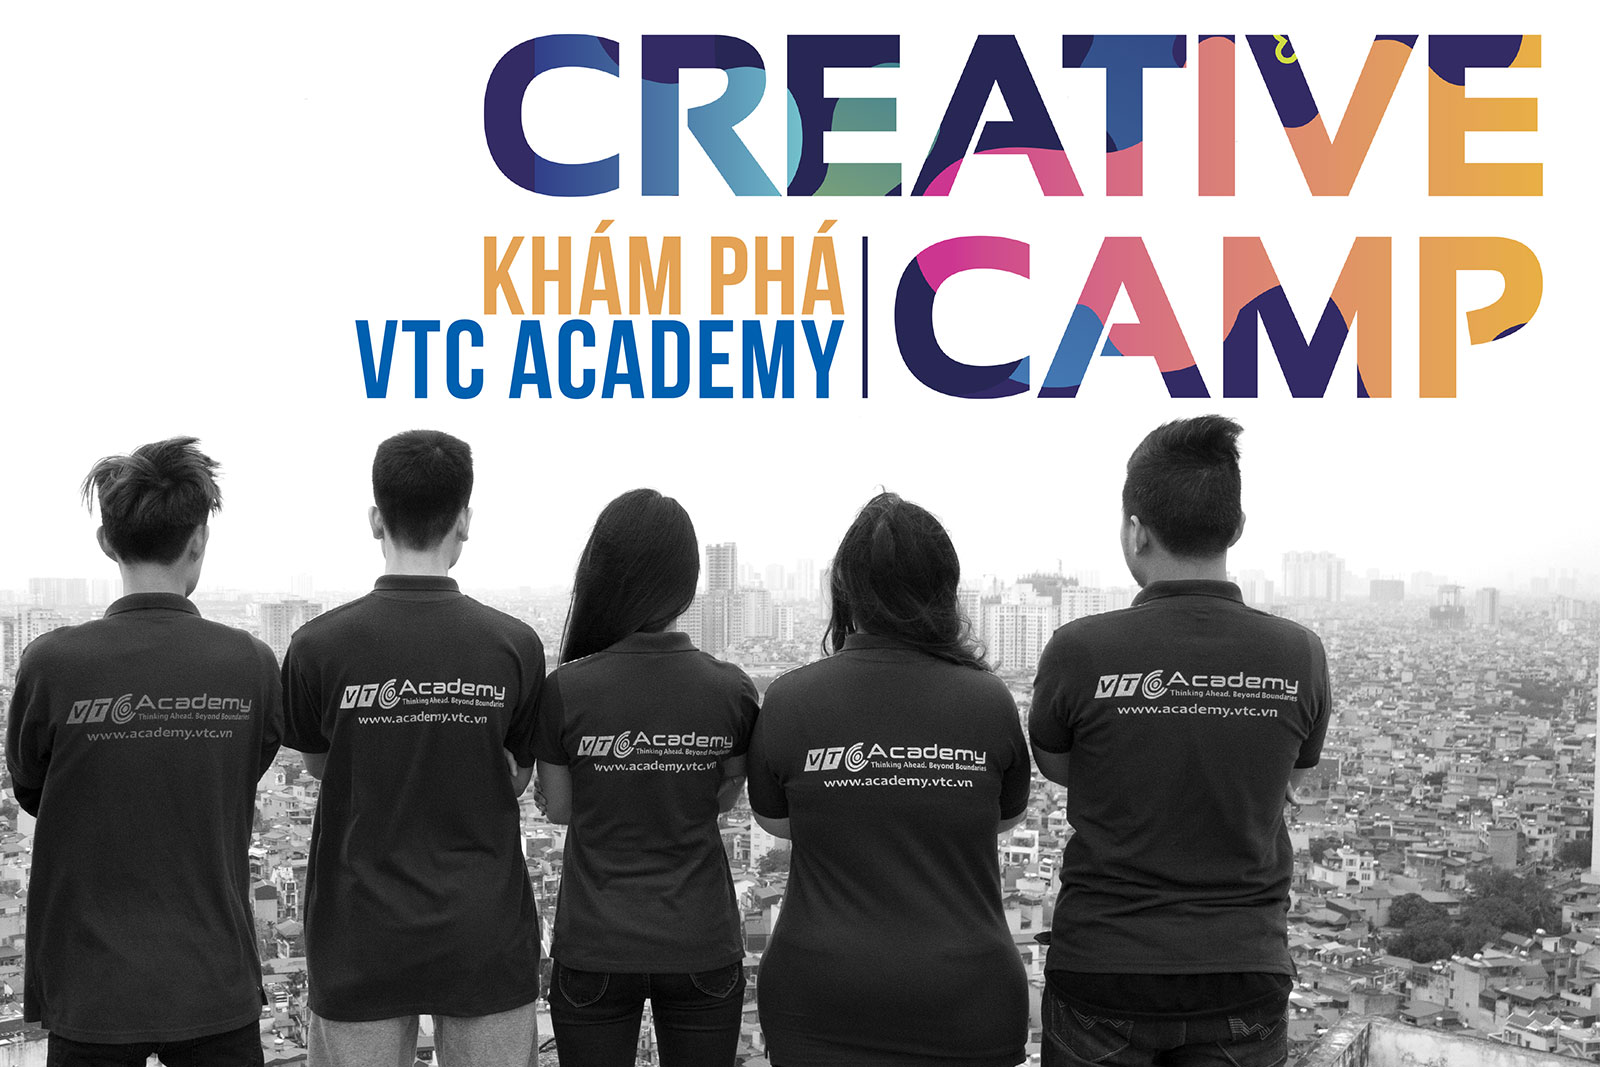 VTC Academy tổ chức Creative Camp 2018 lần một tại Hà Nội